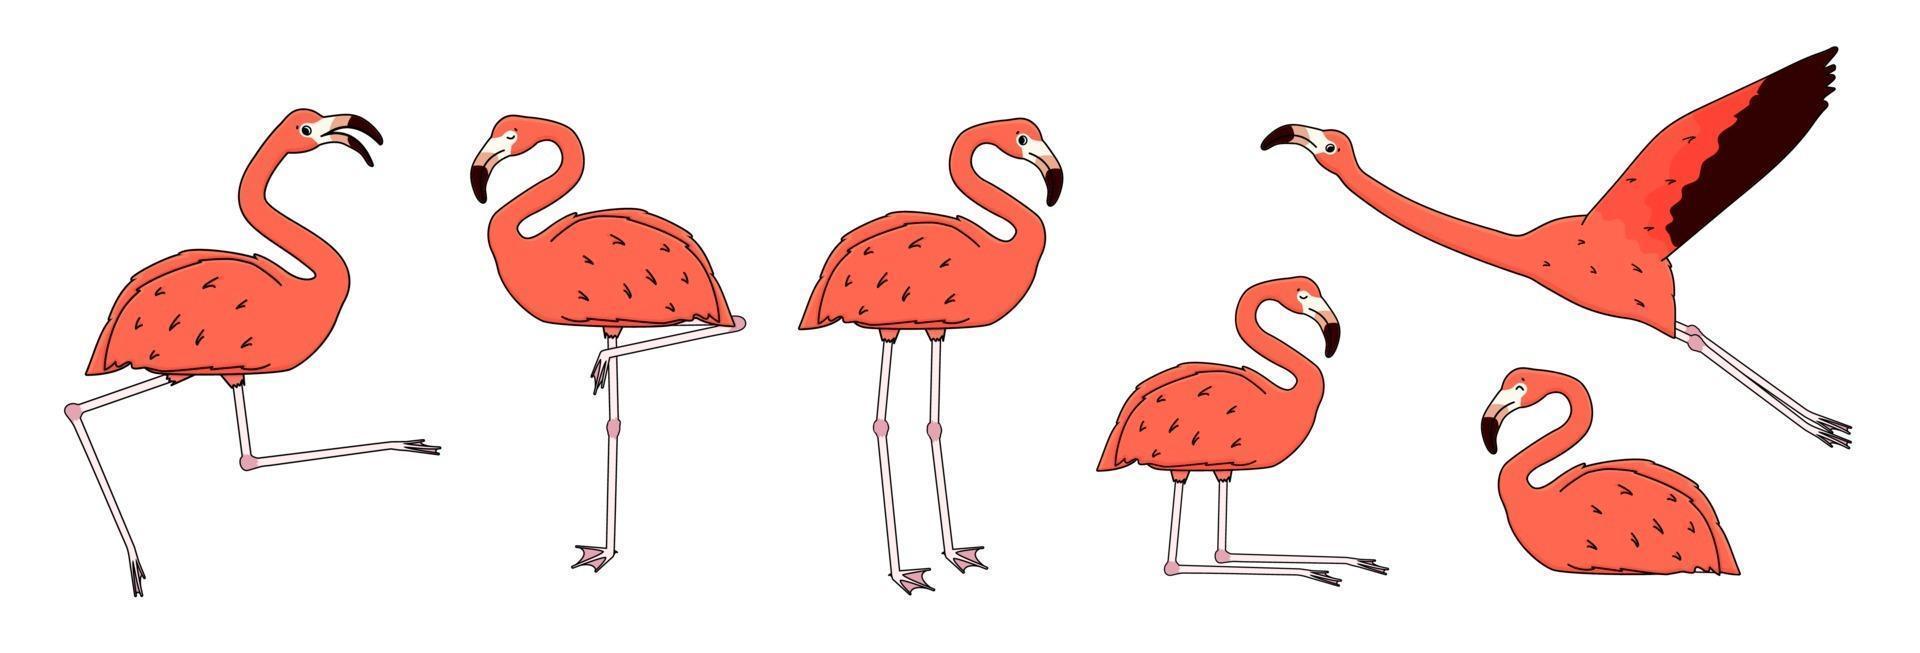 set van vector overzicht cartoon roze perzik flamingo's geïsoleerd op een witte achtergrond. doodle dier is actief, dansend, vliegt, verheugt zich, slaapt, rust, ontspant, droomt, loopt. verschillende poses illustratie